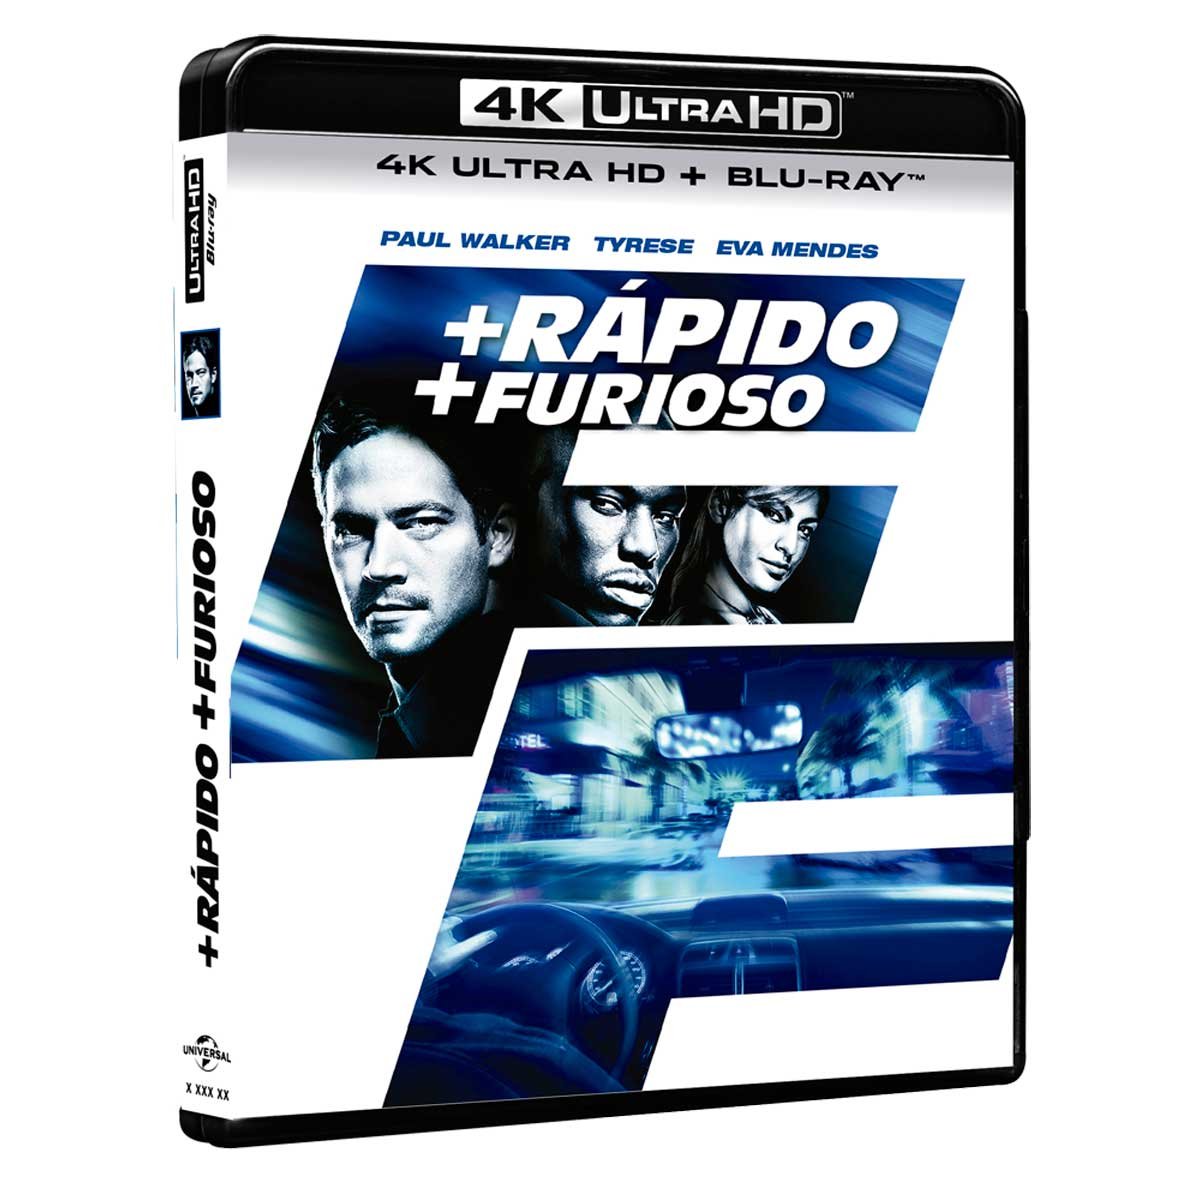 4K Uhd + Blu Ray + Rápido + Furioso